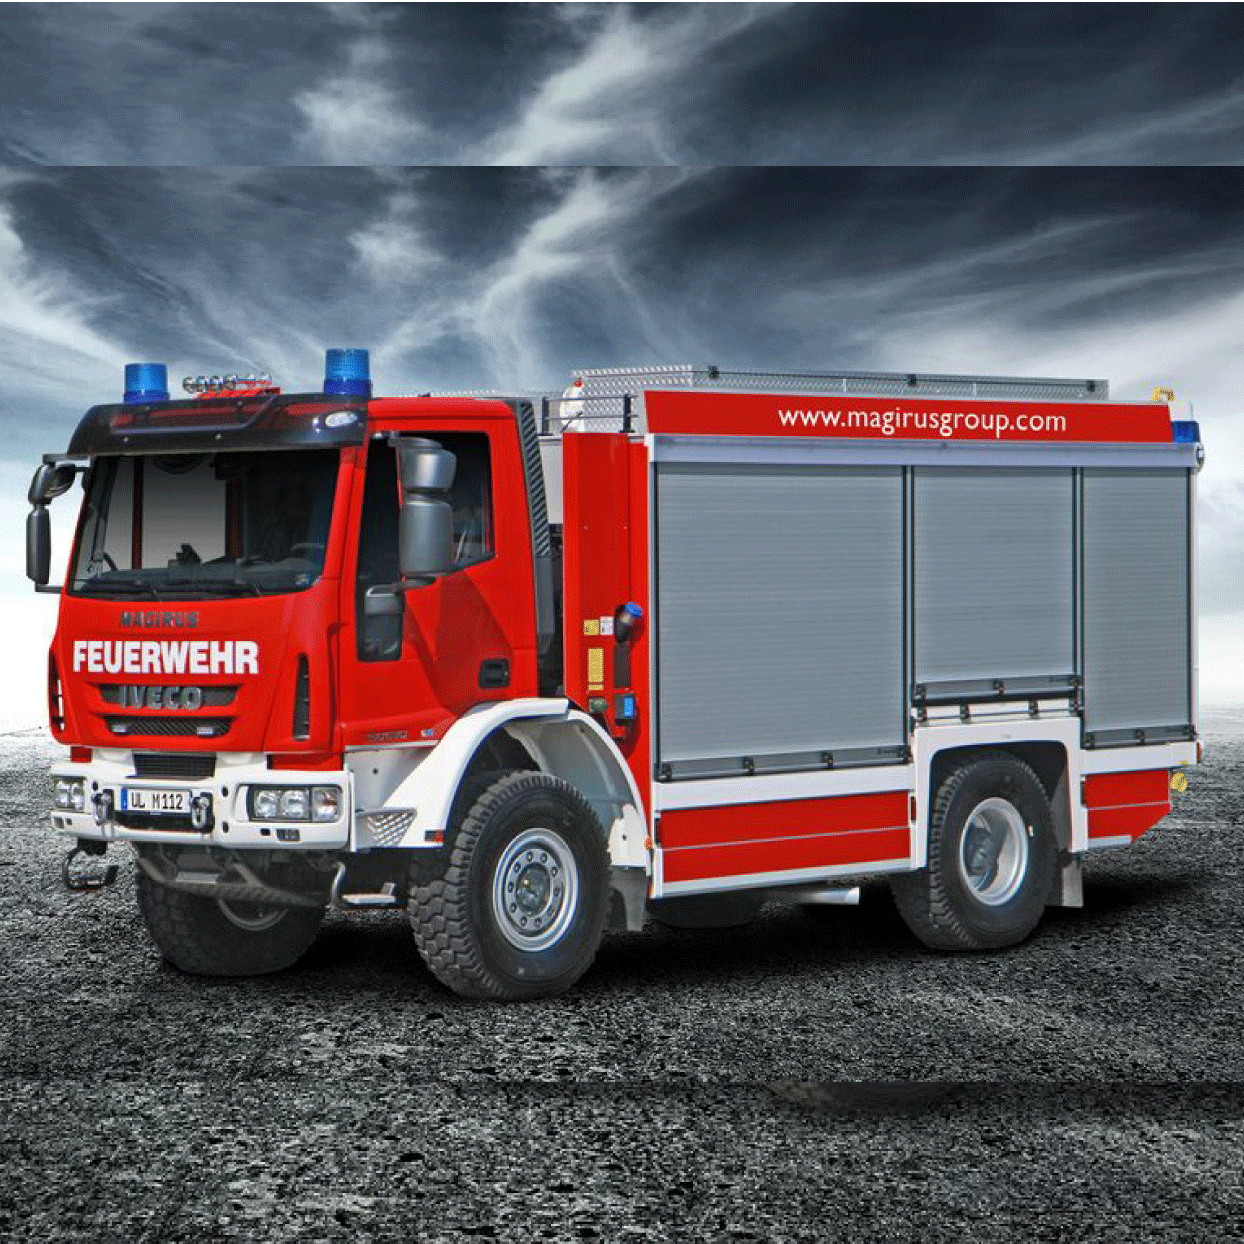 Camiones Magirus Colombia camion para bomberos Bogota camiones para bomberos